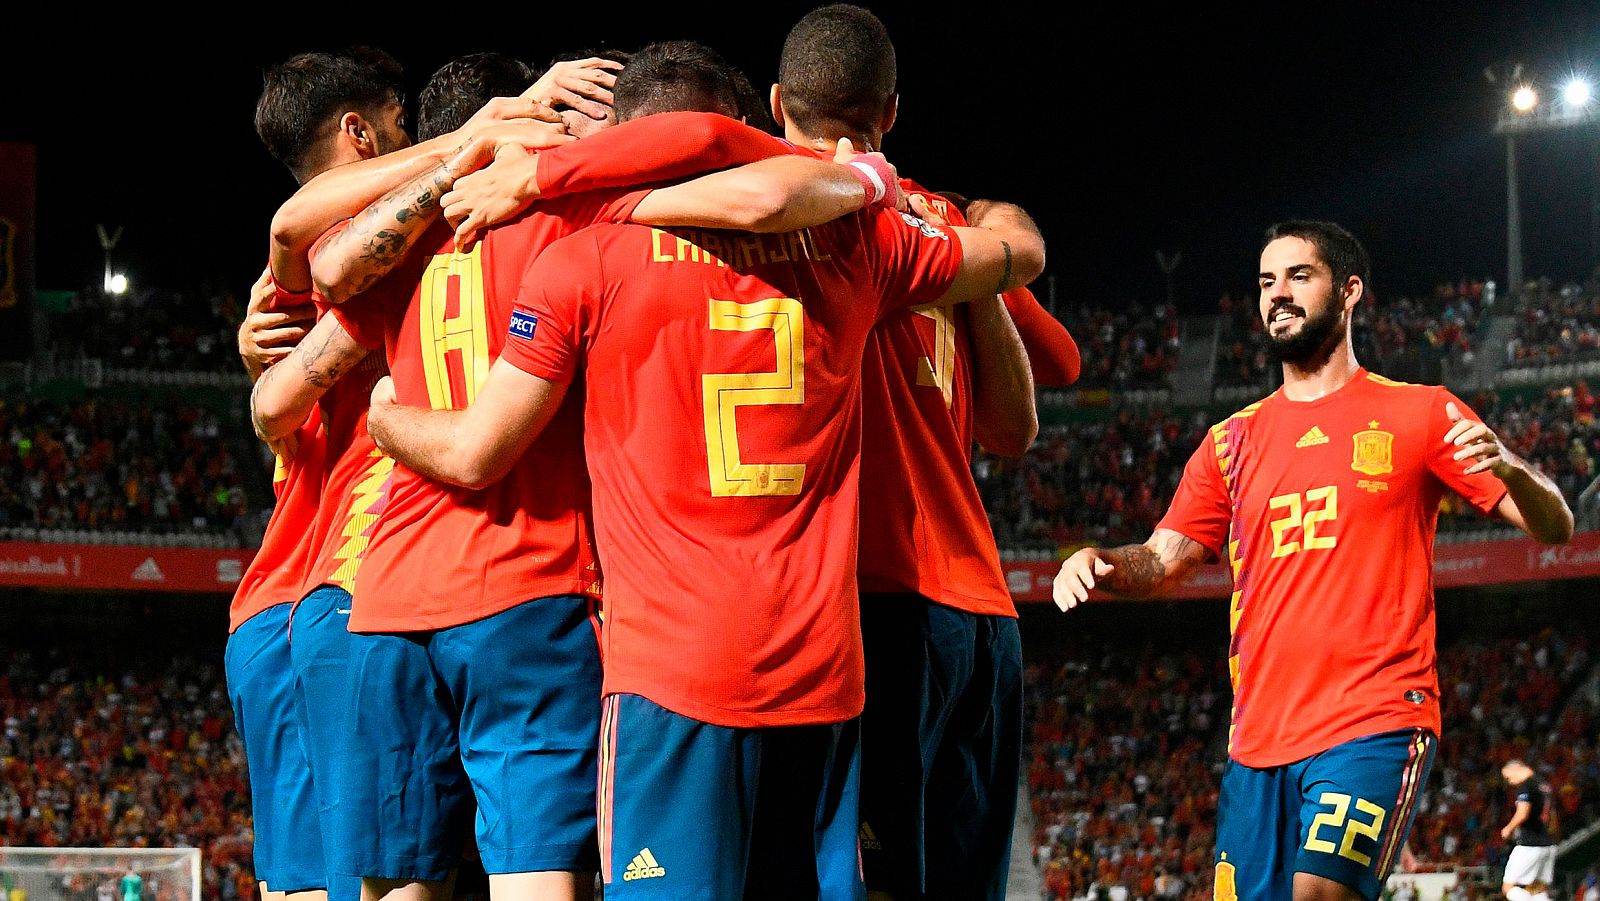 La selección española ha ganado su segundo partido consecutivo en la Liga de Naciones y lo ha hecho con una tremenda goleada a la subcampeona del mundo, Croacia, por 6-0.